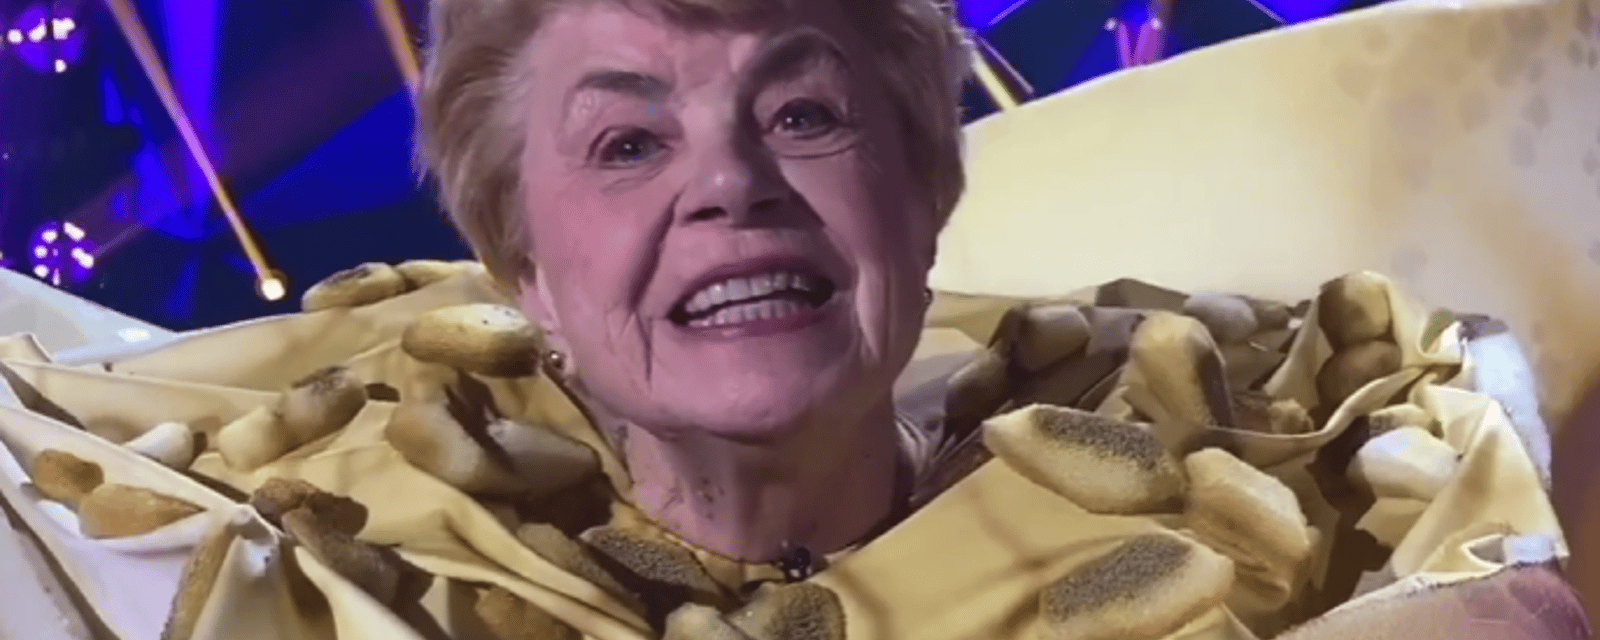 À 85 ans, Sœur Angèle a un message pour vous suite à sa présence dans Chanteurs masqués